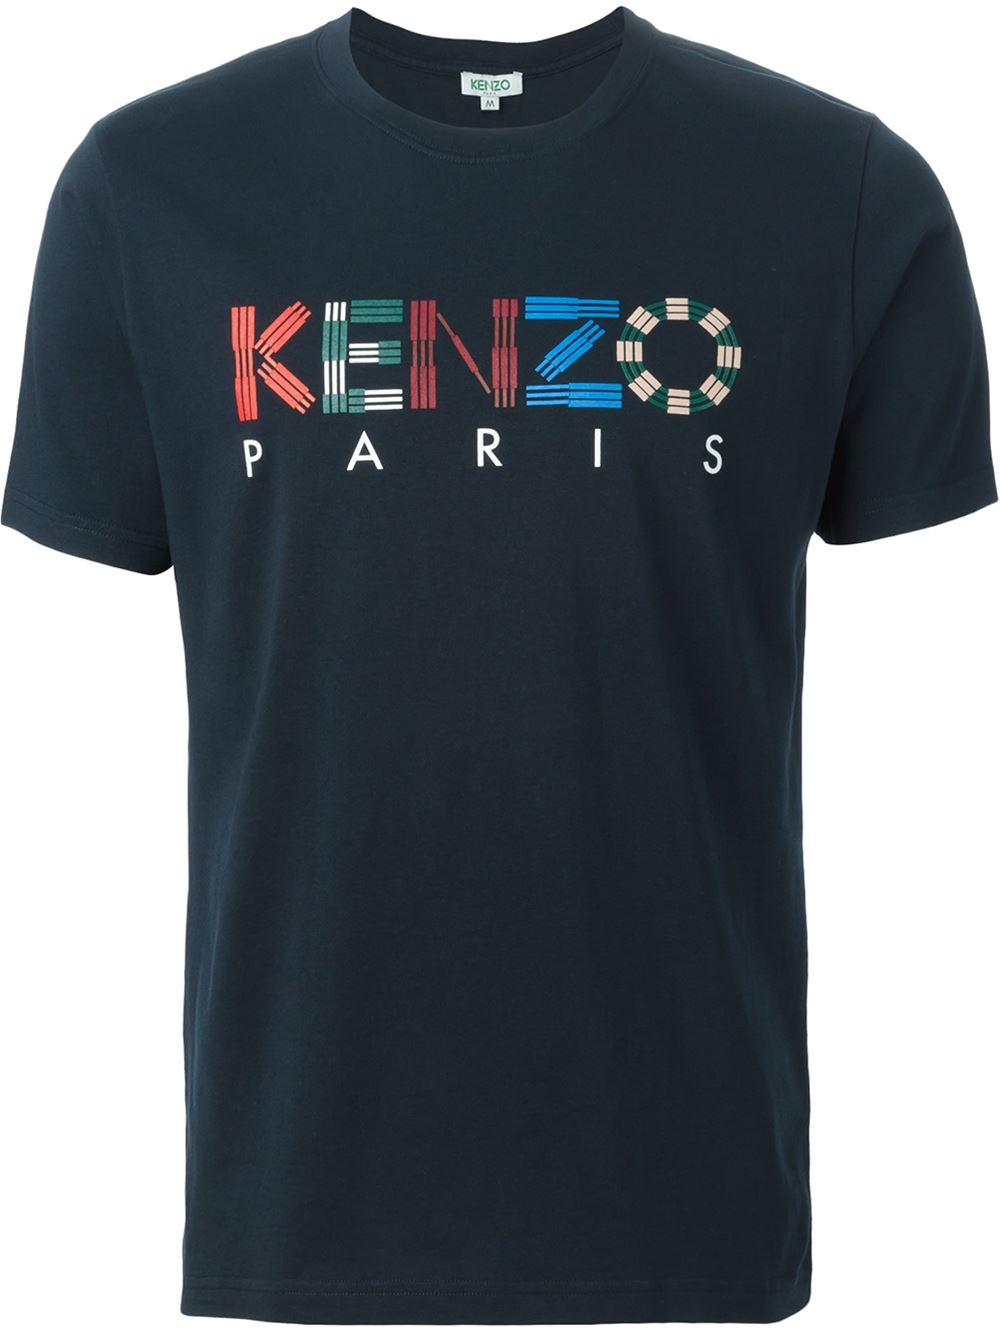 Kenzo Paris Print T-shirt in Blue for Men